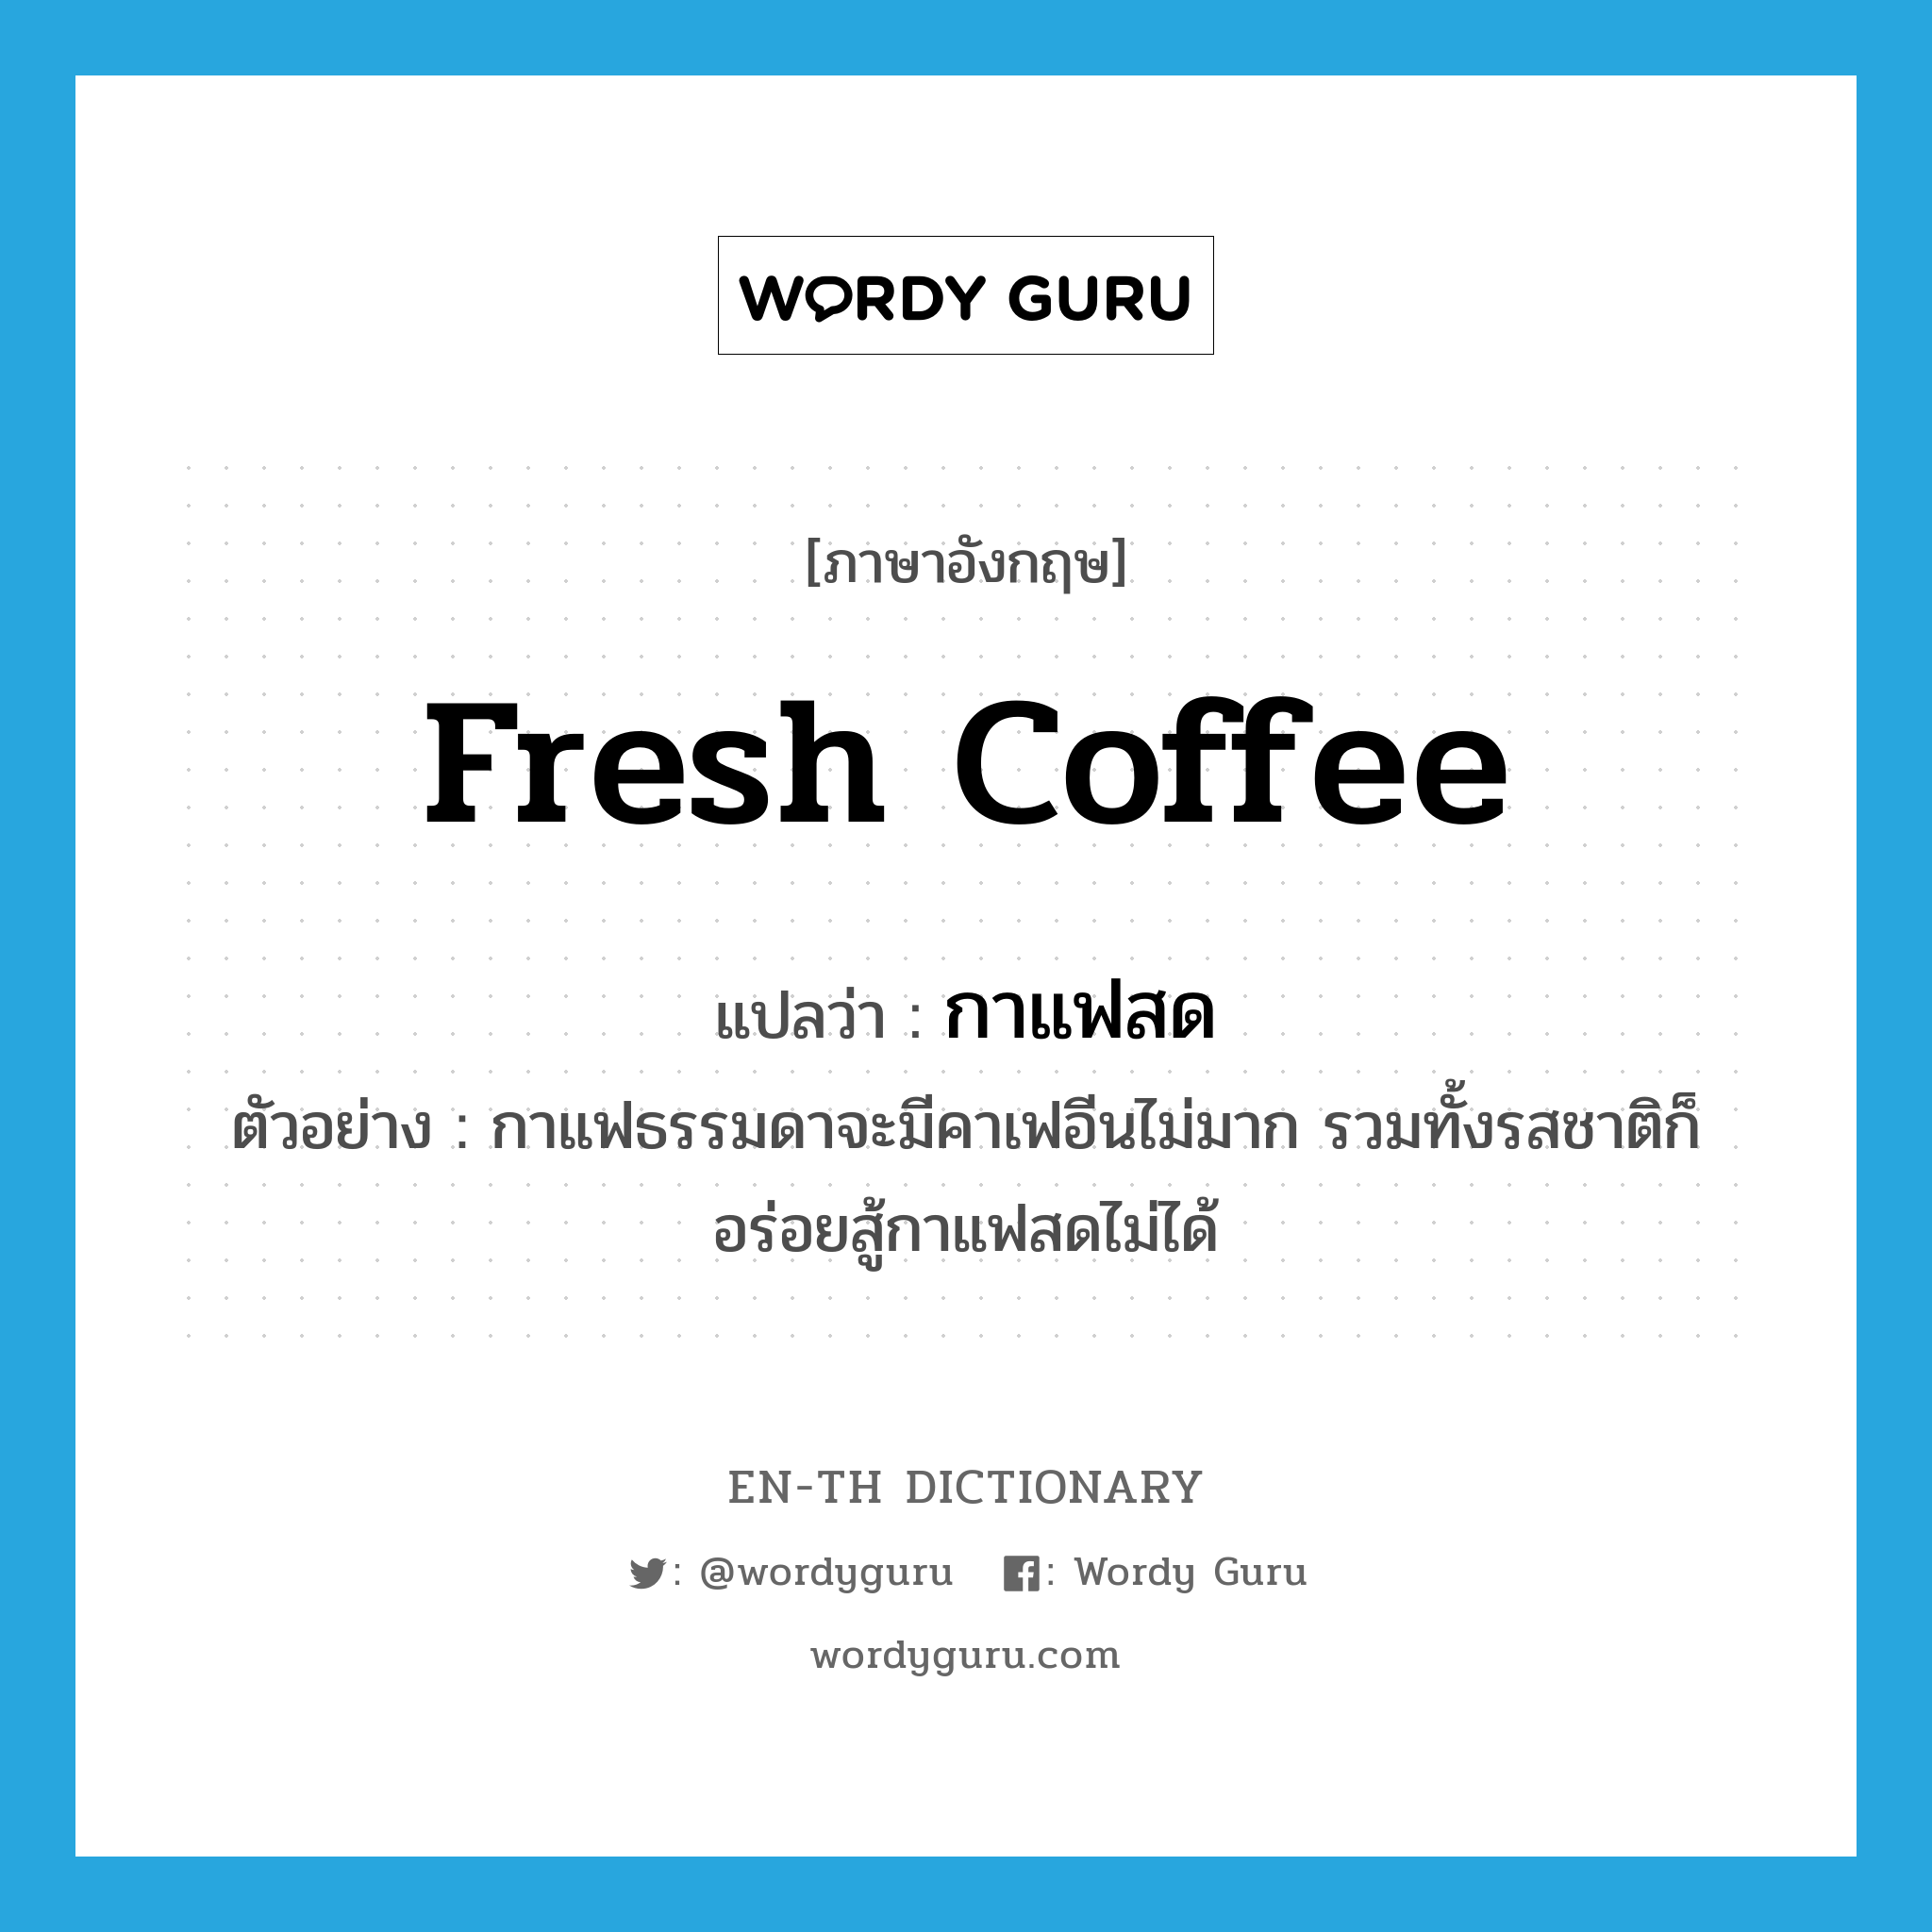 กาแฟสด ภาษาอังกฤษ?, คำศัพท์ภาษาอังกฤษ กาแฟสด แปลว่า fresh coffee ประเภท N ตัวอย่าง กาแฟธรรมดาจะมีคาเฟอีนไม่มาก รวมทั้งรสชาติก็อร่อยสู้กาแฟสดไม่ได้ หมวด N